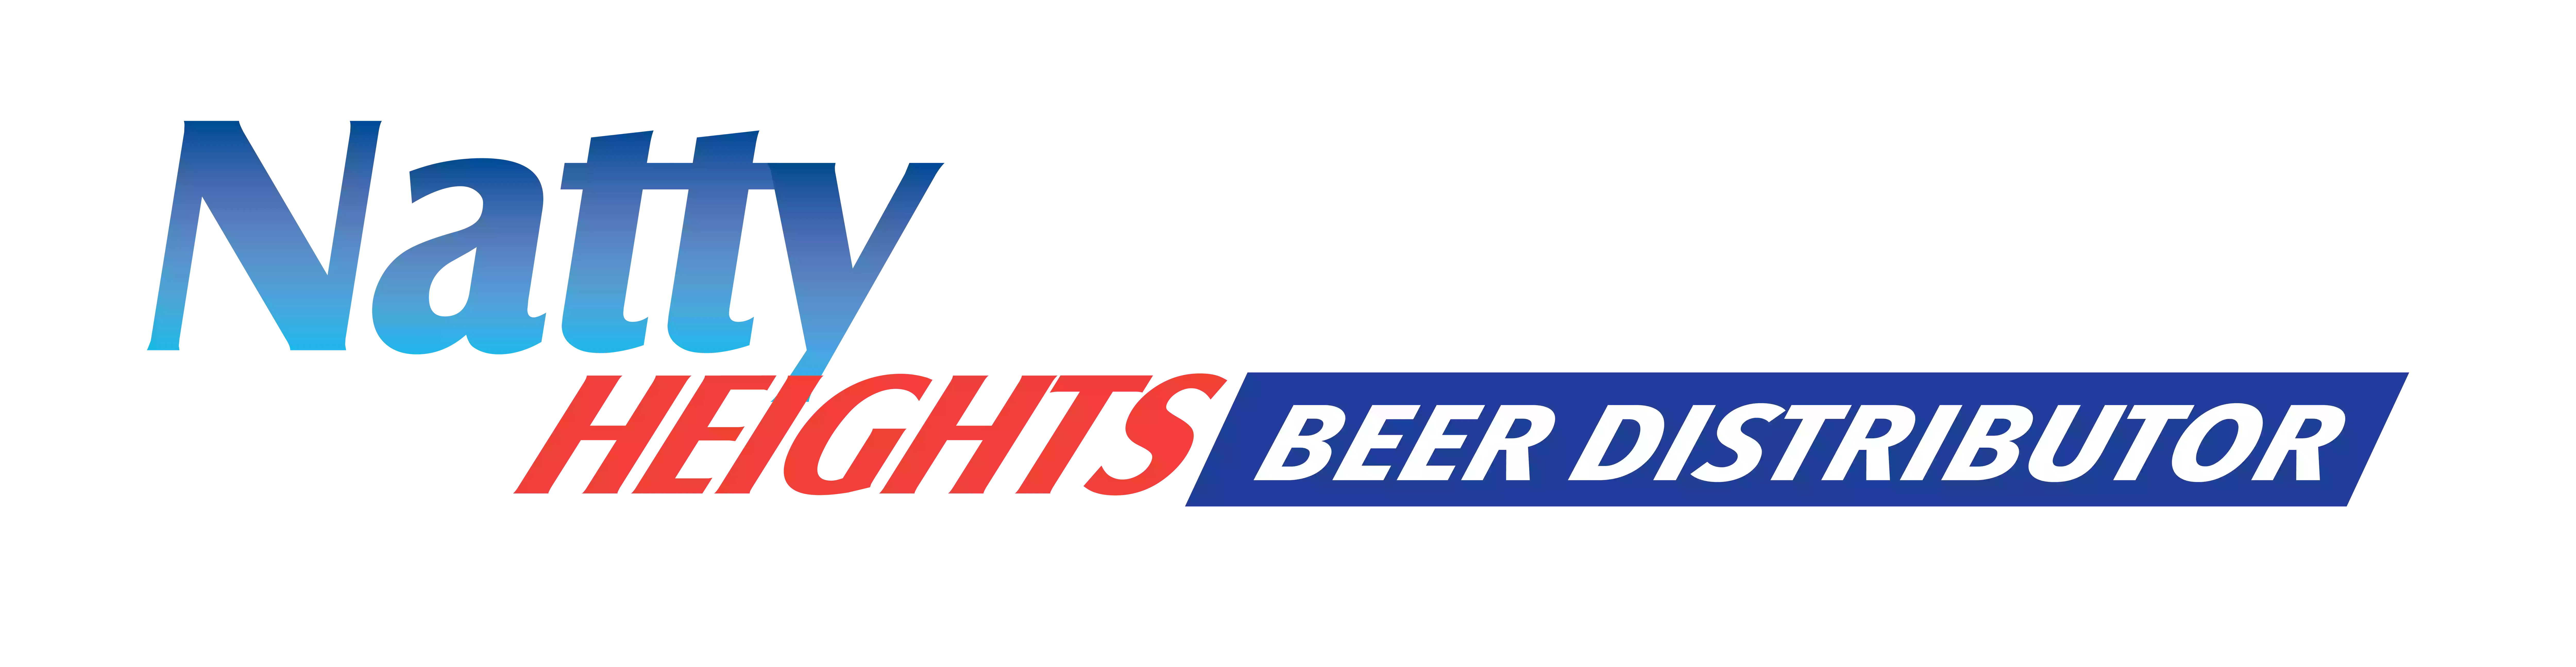 Natty Heights Beer